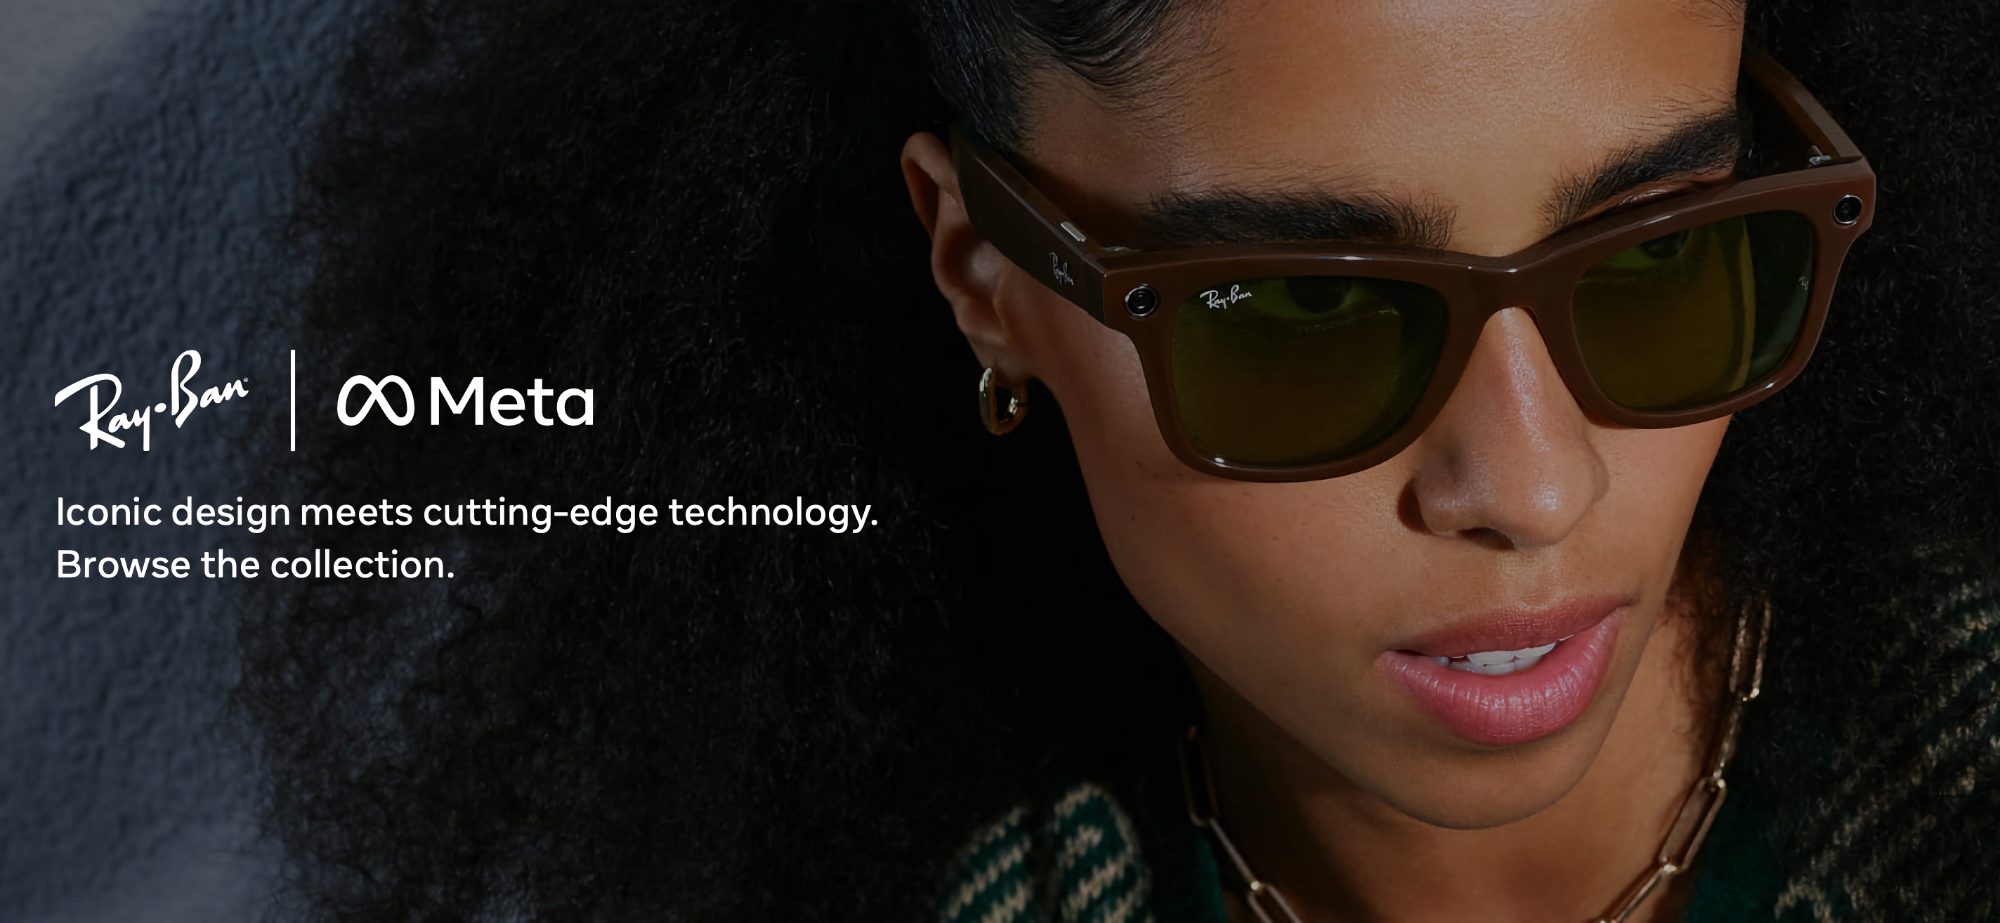 Meta i Ray-Ban zaprezentowały nowe inteligentne okulary z chipem Snapdragon AR1 Gen 1, ochroną IPX4, aparatem 12 MP i możliwością strumieniowego przesyłania filmów do Instagrama i Facebooka.